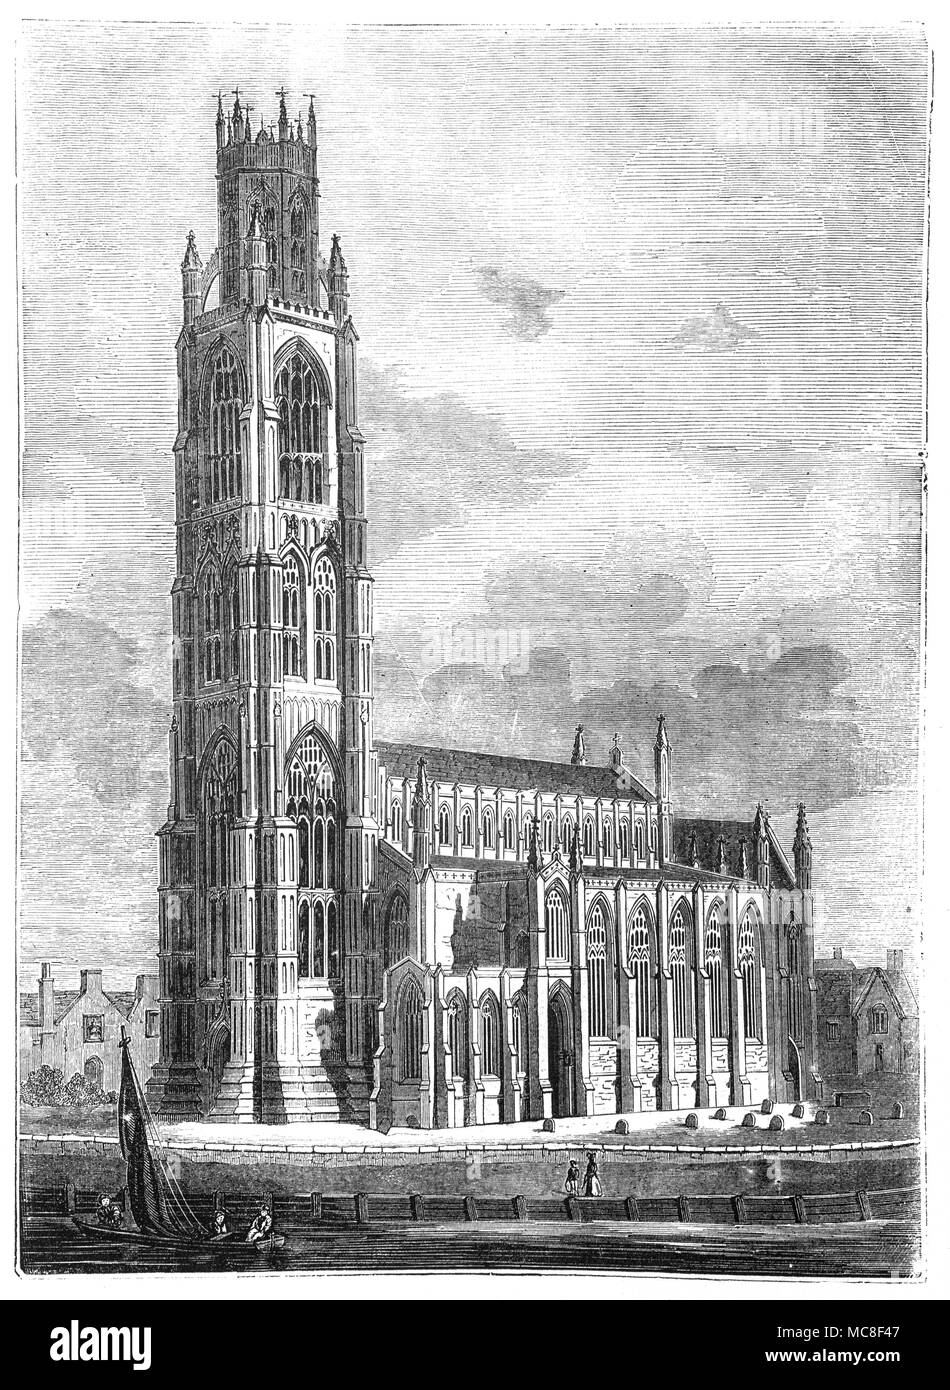 La rivière Witham passant Eglise St Botolph à Boston, Lincolnshire, Angleterre. L'église actuelle a commencé en 1309, et est connu pour sa haute tour extraordinaire, connu sous le nom de "Boston Stump', commencé en 1450, et achevée entre 1510 et 1520 dans le style perpendiculaire. La tour a été utilisée comme marqueur pour les voyageurs sur les fens et dans le lavage, et il est communément admis qu'il était une fois allumé de l'intérieur de la tour à cette fin de nuit comme de jour. Banque D'Images